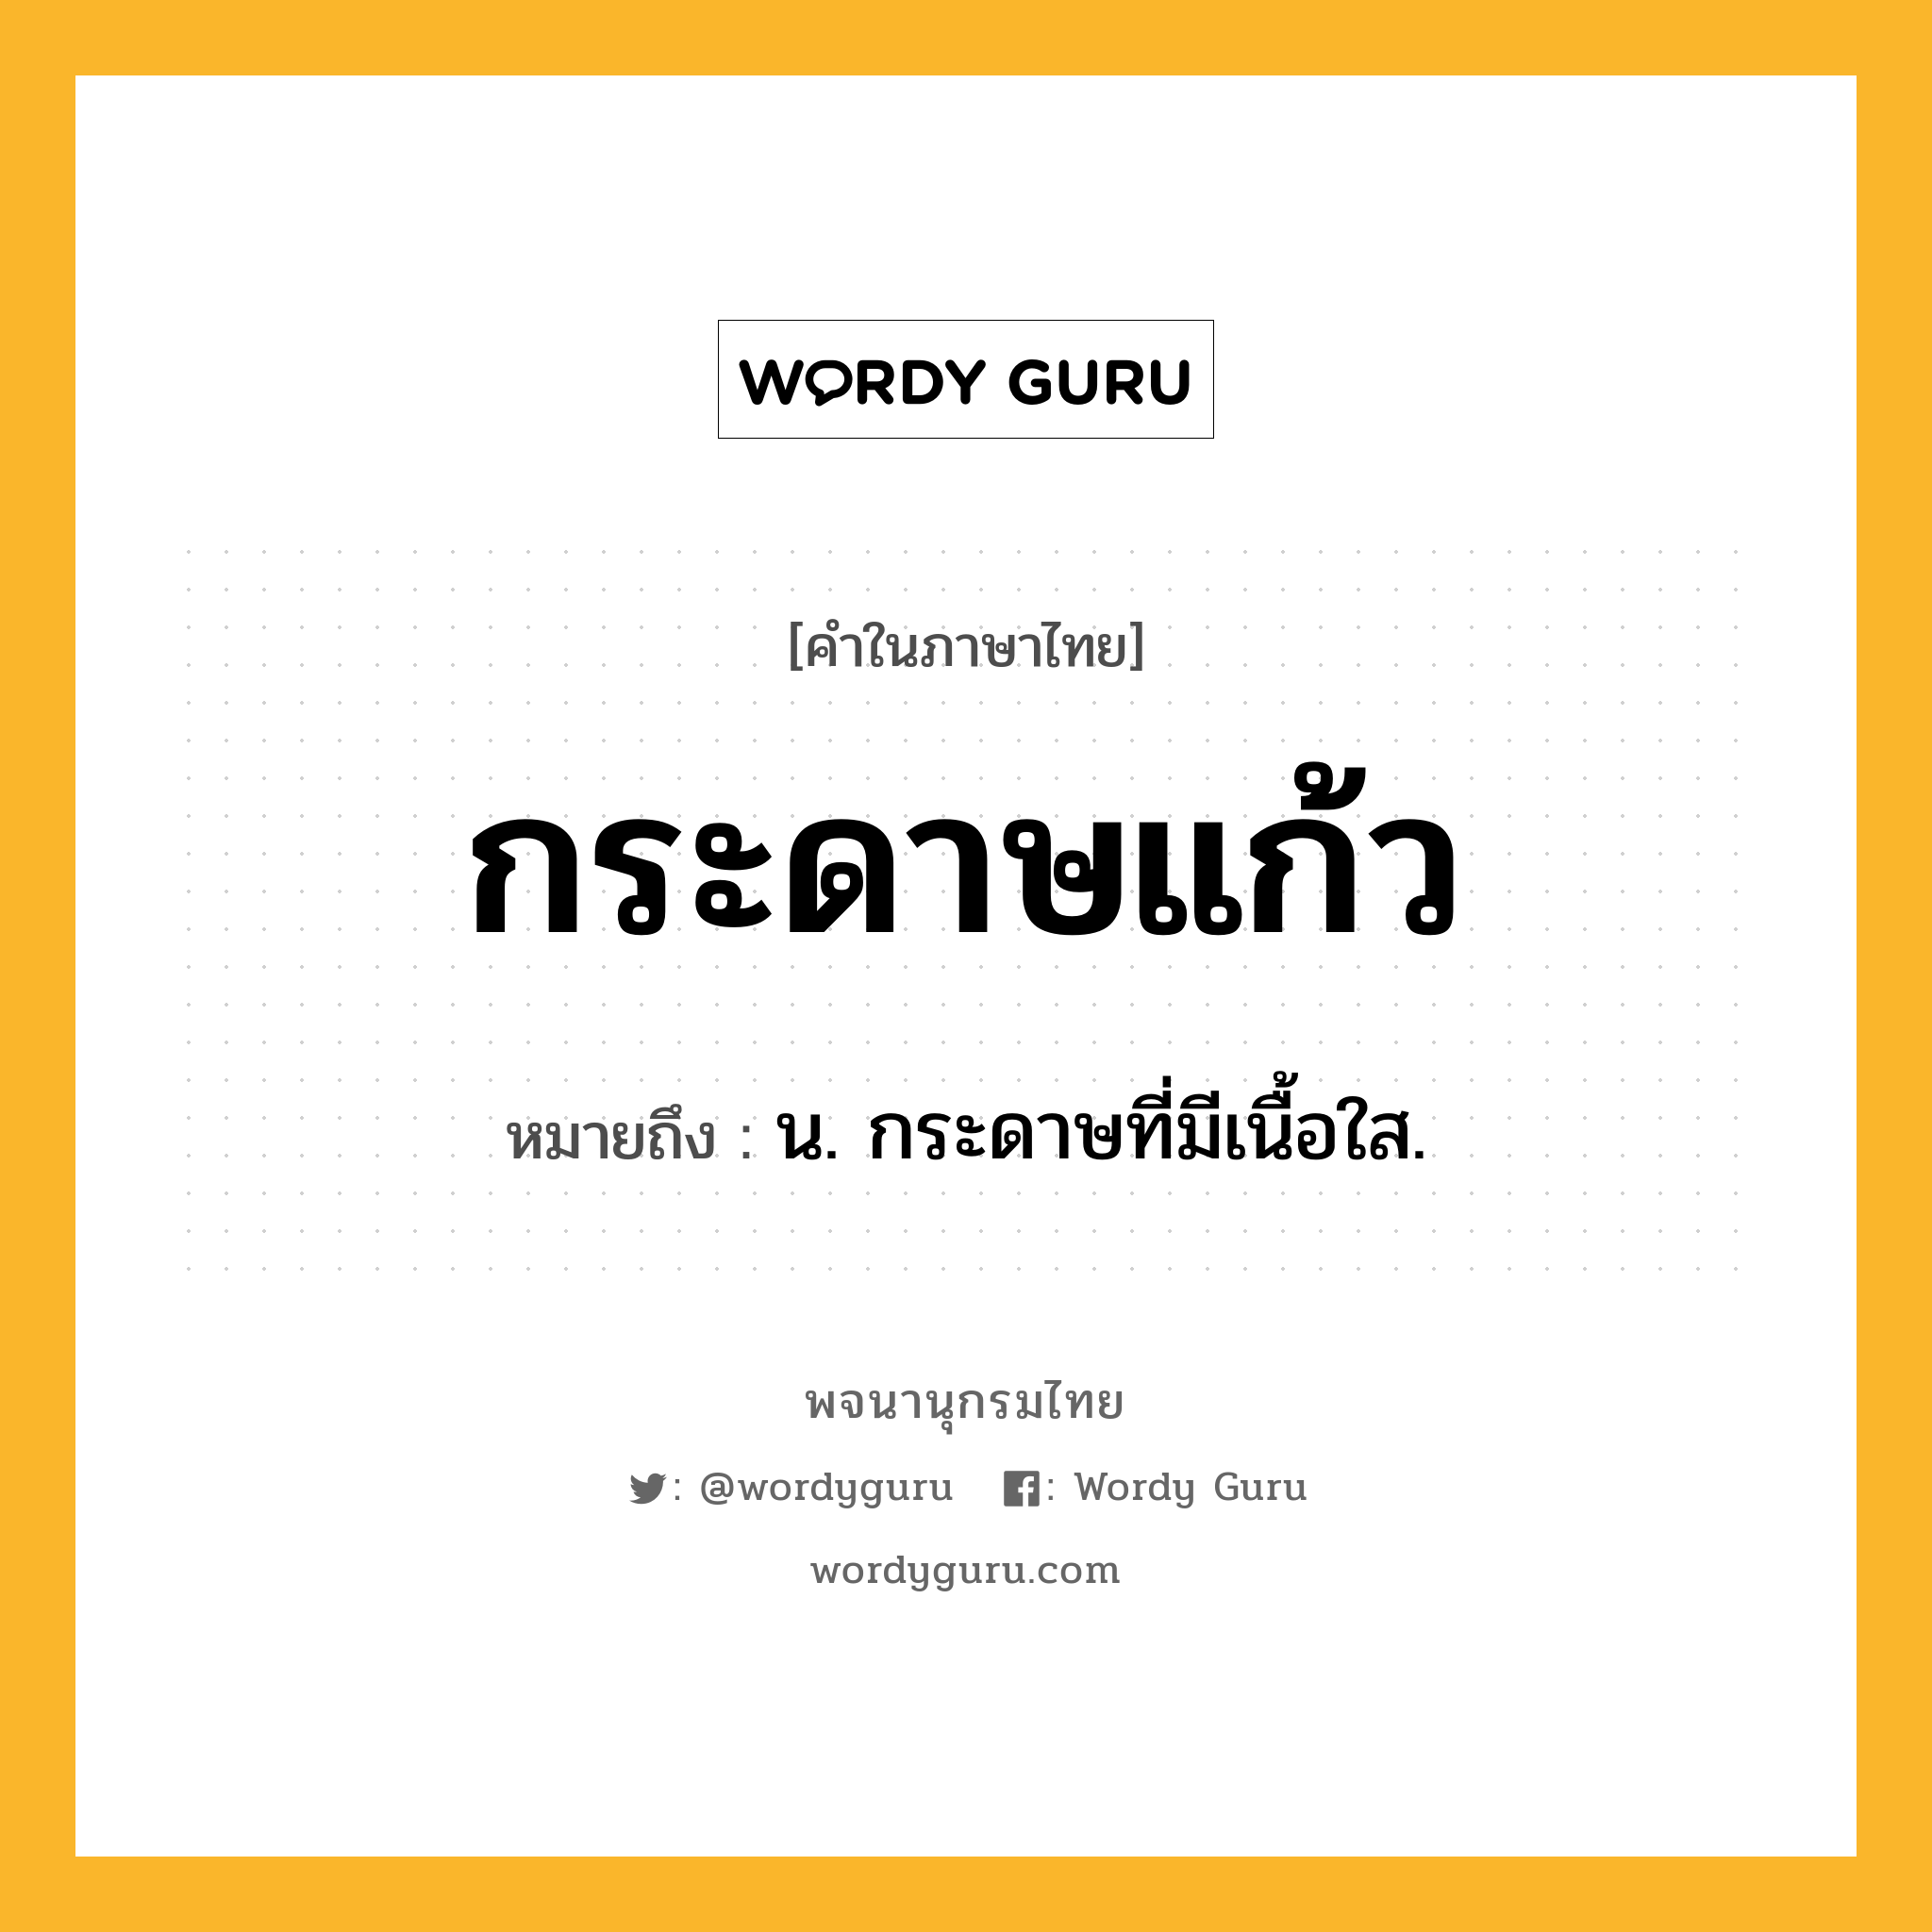 กระดาษแก้ว ความหมาย หมายถึงอะไร?, คำในภาษาไทย กระดาษแก้ว หมายถึง น. กระดาษที่มีเนื้อใส.